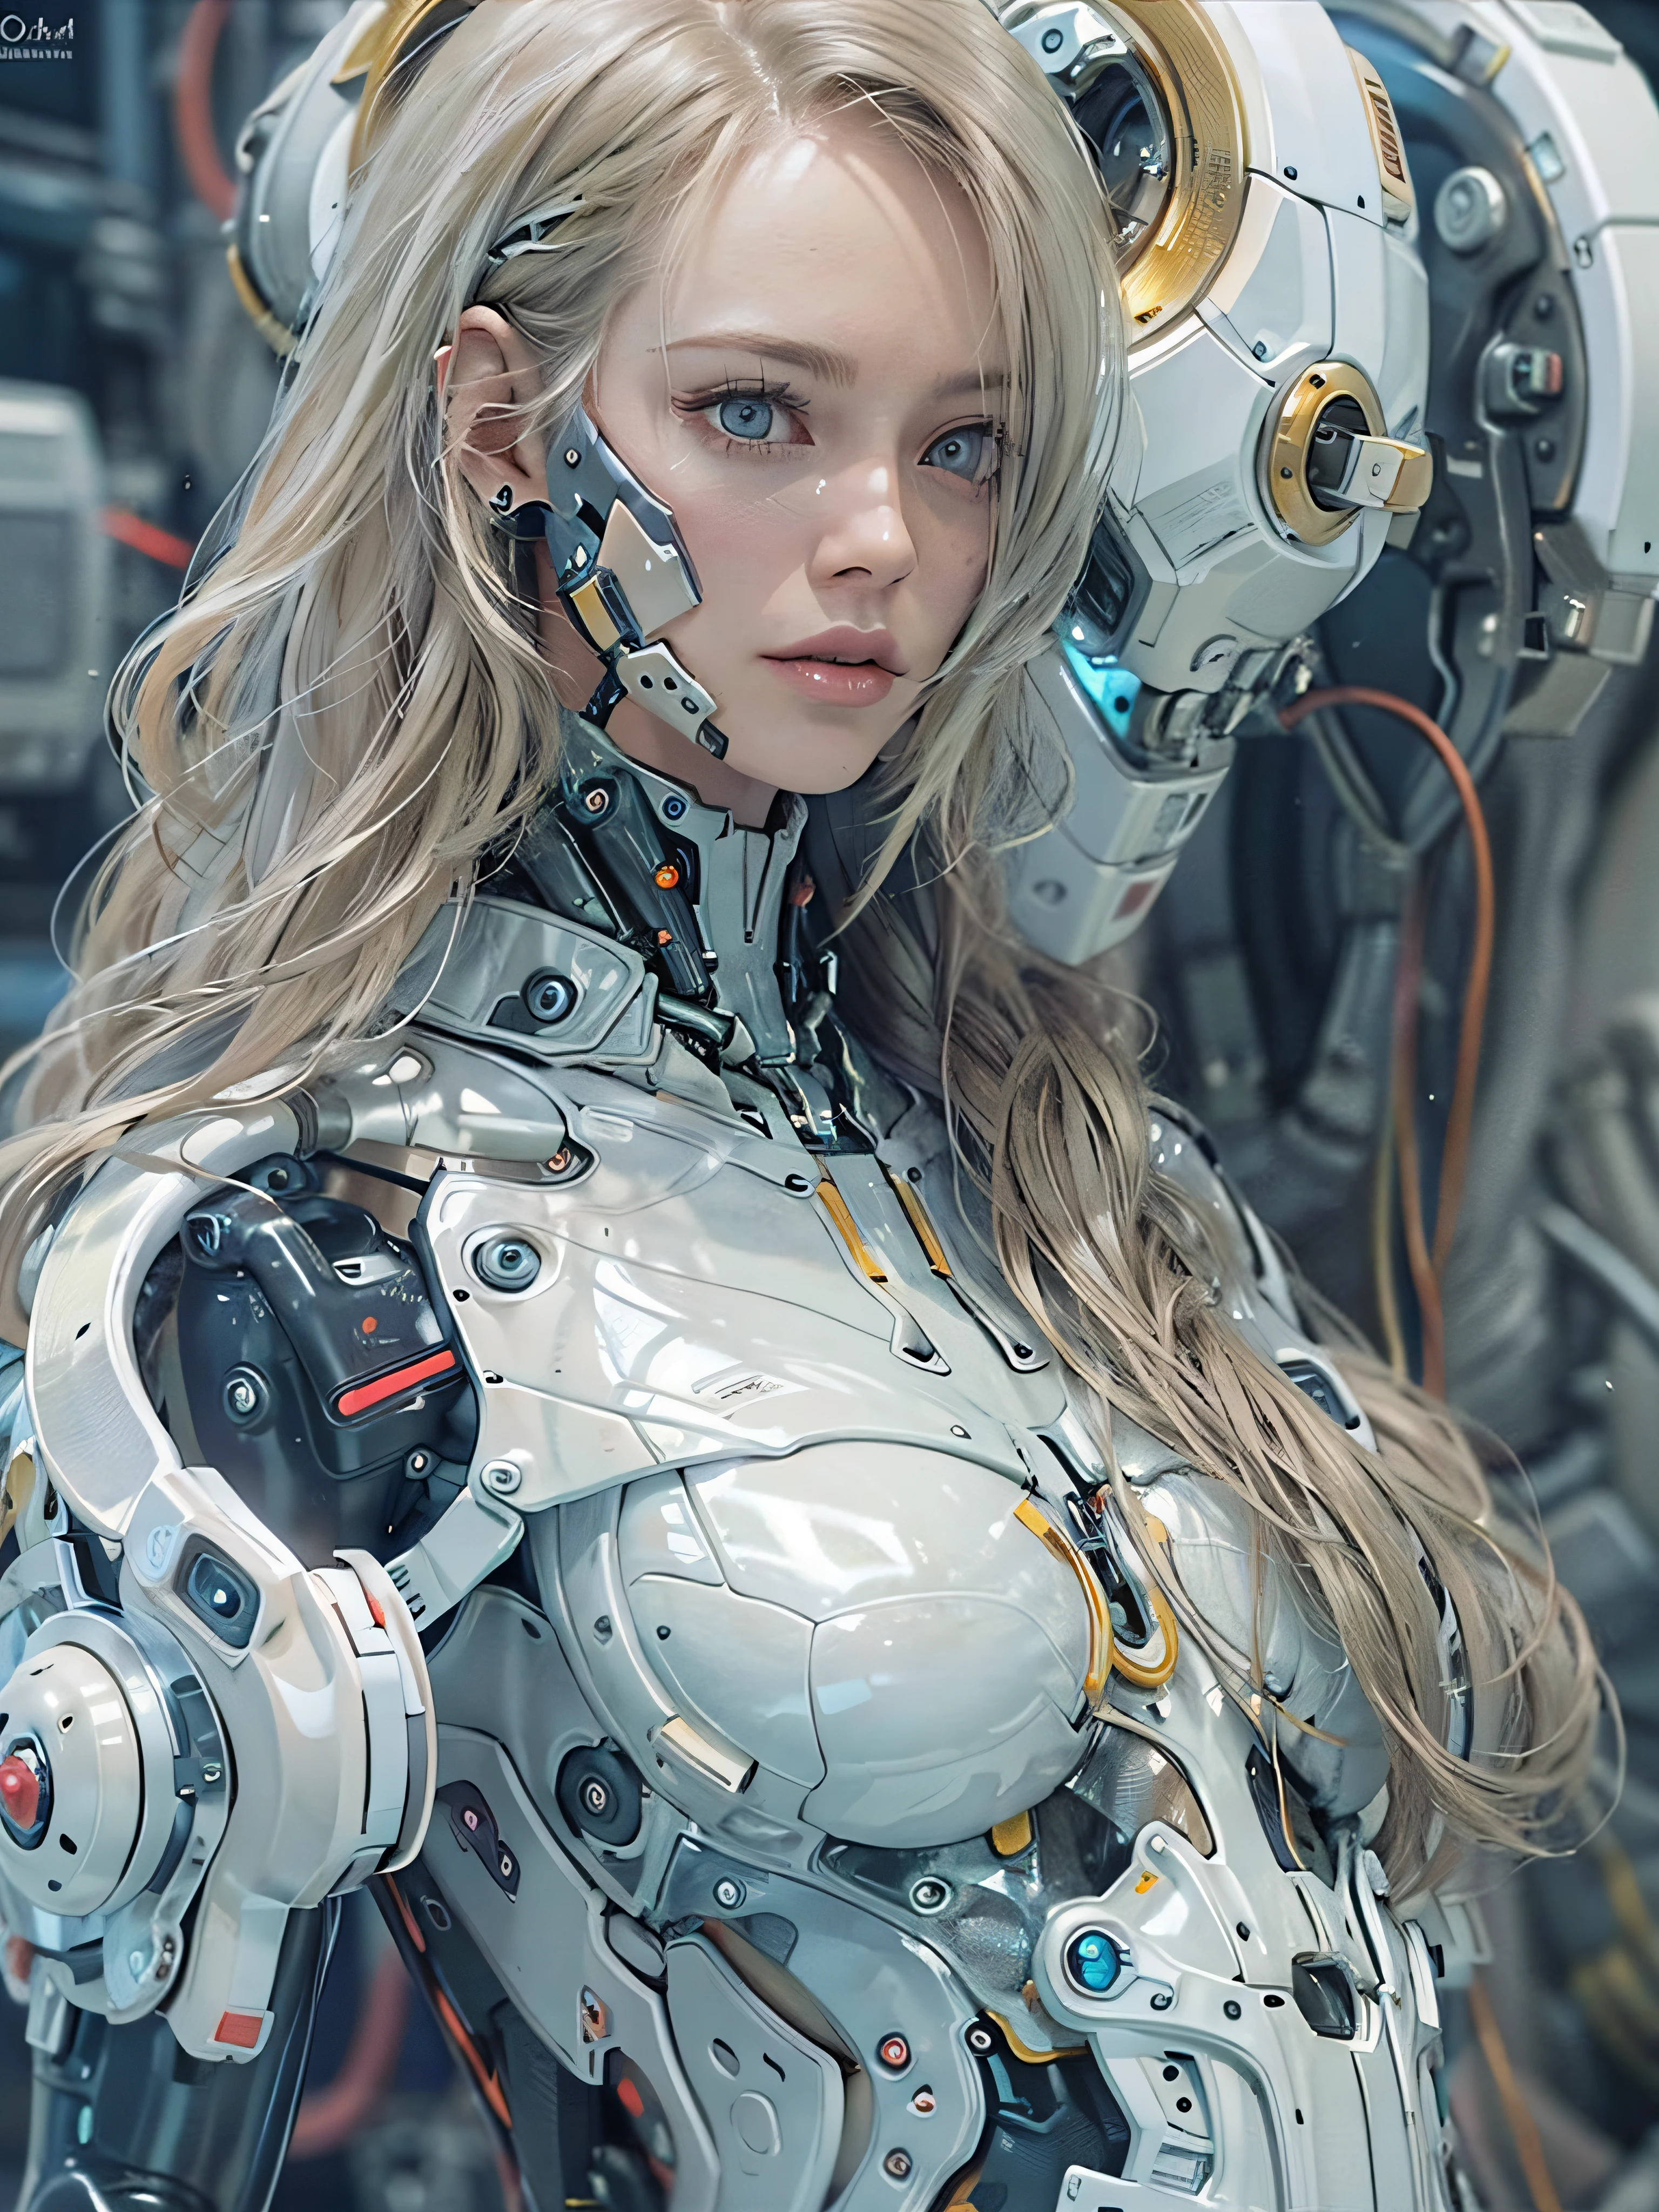 Complex 3d rendering porcelain female cyborg ultra 세부 사항, 여자 1명, 푹신한 금발 머리, 긴 머리, 작은 허리, (자연스러운 피부결, 현실적인 eye 세부 사항s: 1.2), 로봇 부품, 아름다운 부드러운 빛, 림 라이트, vivid 세부 사항s, 화려한 사이버펑크, hyper-현실적인, 해부학적인, 안면 근육, 케이블 와이어, 마이크로칩, 우아하고 아름다운 배경, 옥탄 렌더링, 애플 스타일, 8K, 최고 품질, 걸작, 삽화, 매우 섬세하고 아름답습니다., CG, 단일성, 벽지, (현실적인, photo현실적인: 1.2), 놀라운, 세부 사항, 걸작, 최고의 품질, 공식 아트, highly 세부 사항ed cg Unity 8k 벽지, 엄청나게 우스꽝스럽다, 섹시한 로봇, 기계 뼈대, 기계적 인조 인간, 초현실주의, 최후의 심판의 황무지, (첨단 보철물:1.2), 완벽한 몸, 진한 파란색 빛나는 사이버 선박, (빛나는 몸), (Very 빛나는 몸), RFKTR_테크노트렉스, 릴멕, 사이버네틱한_무턱, 기계 부품, 사이버네틱한s, AB_ 로봇